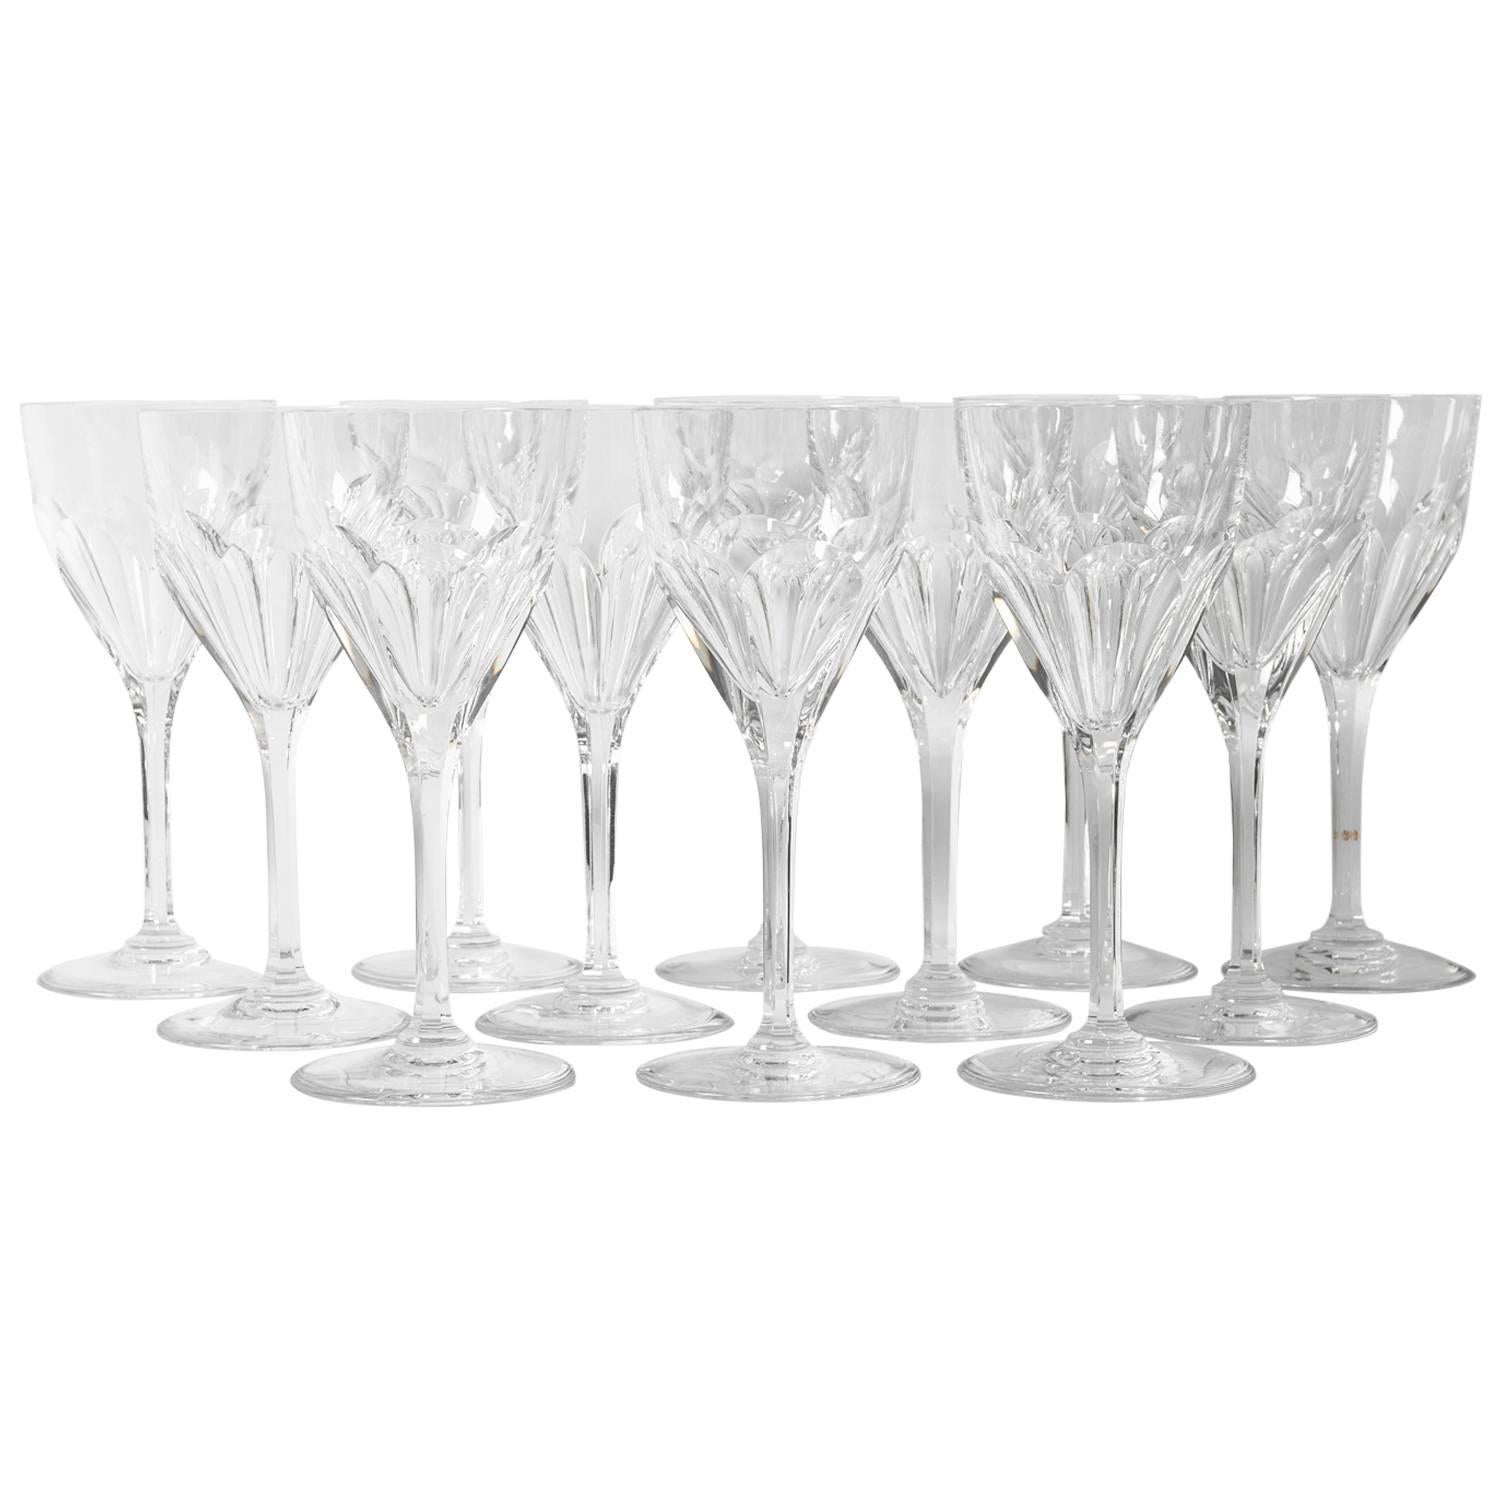 Vintage Saint Louis Crystal Wine / Water Glassware Set